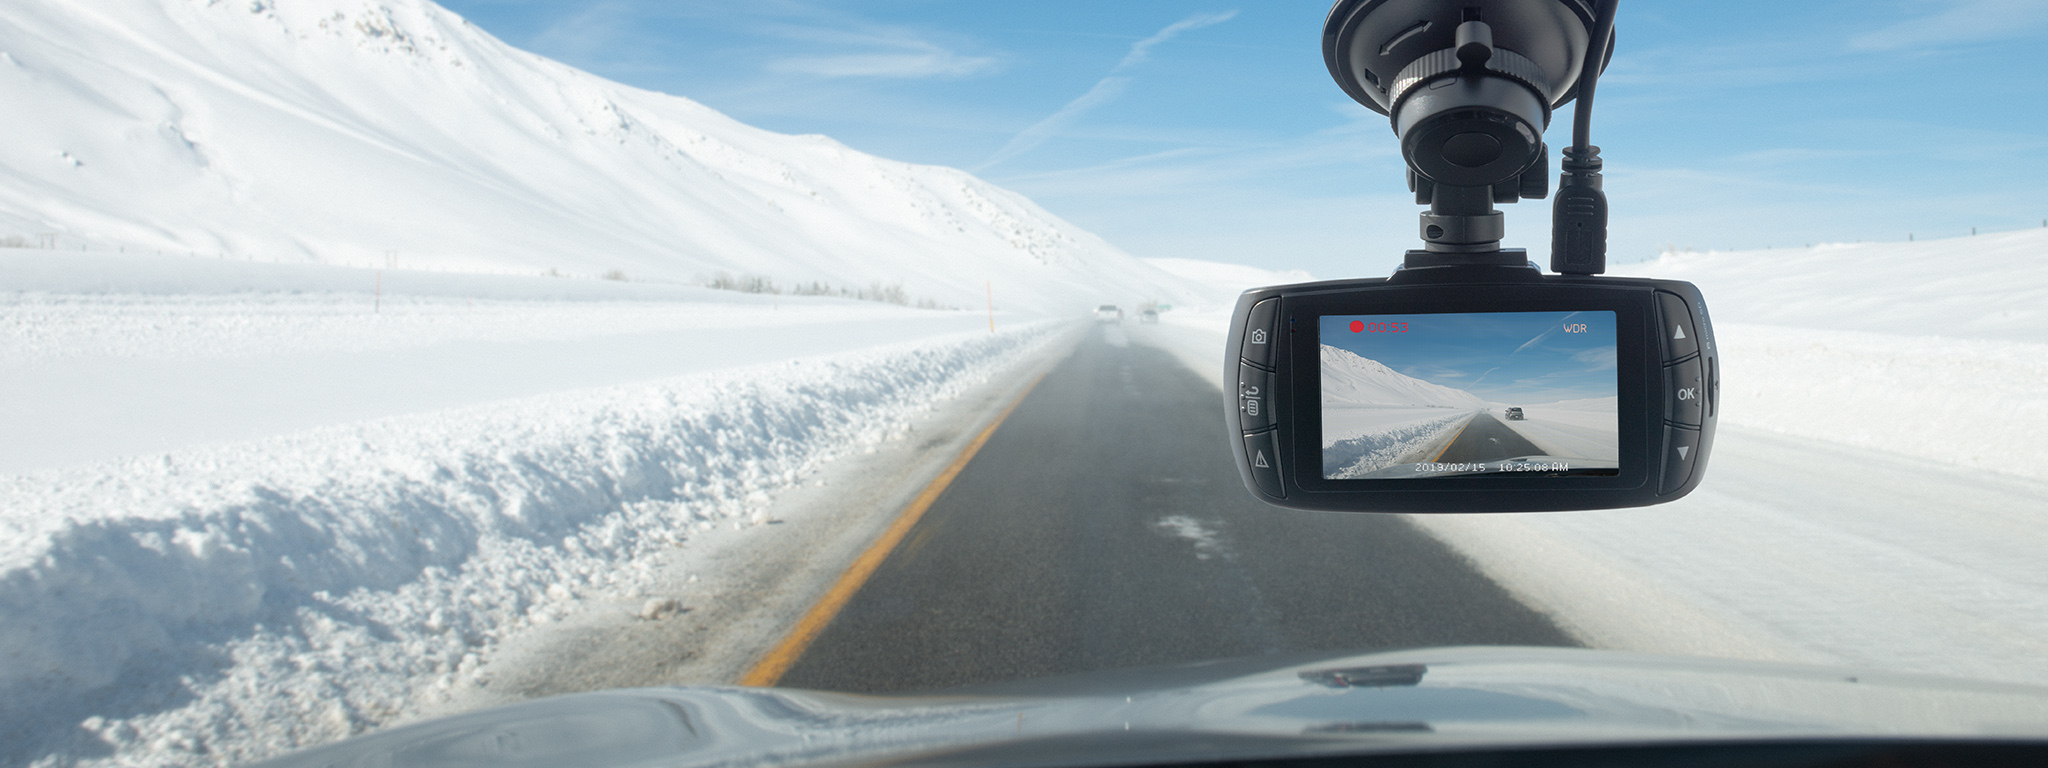 在白雪覆蓋且風景清晰的道路上，行車記錄器安裝在擋風玻璃後面